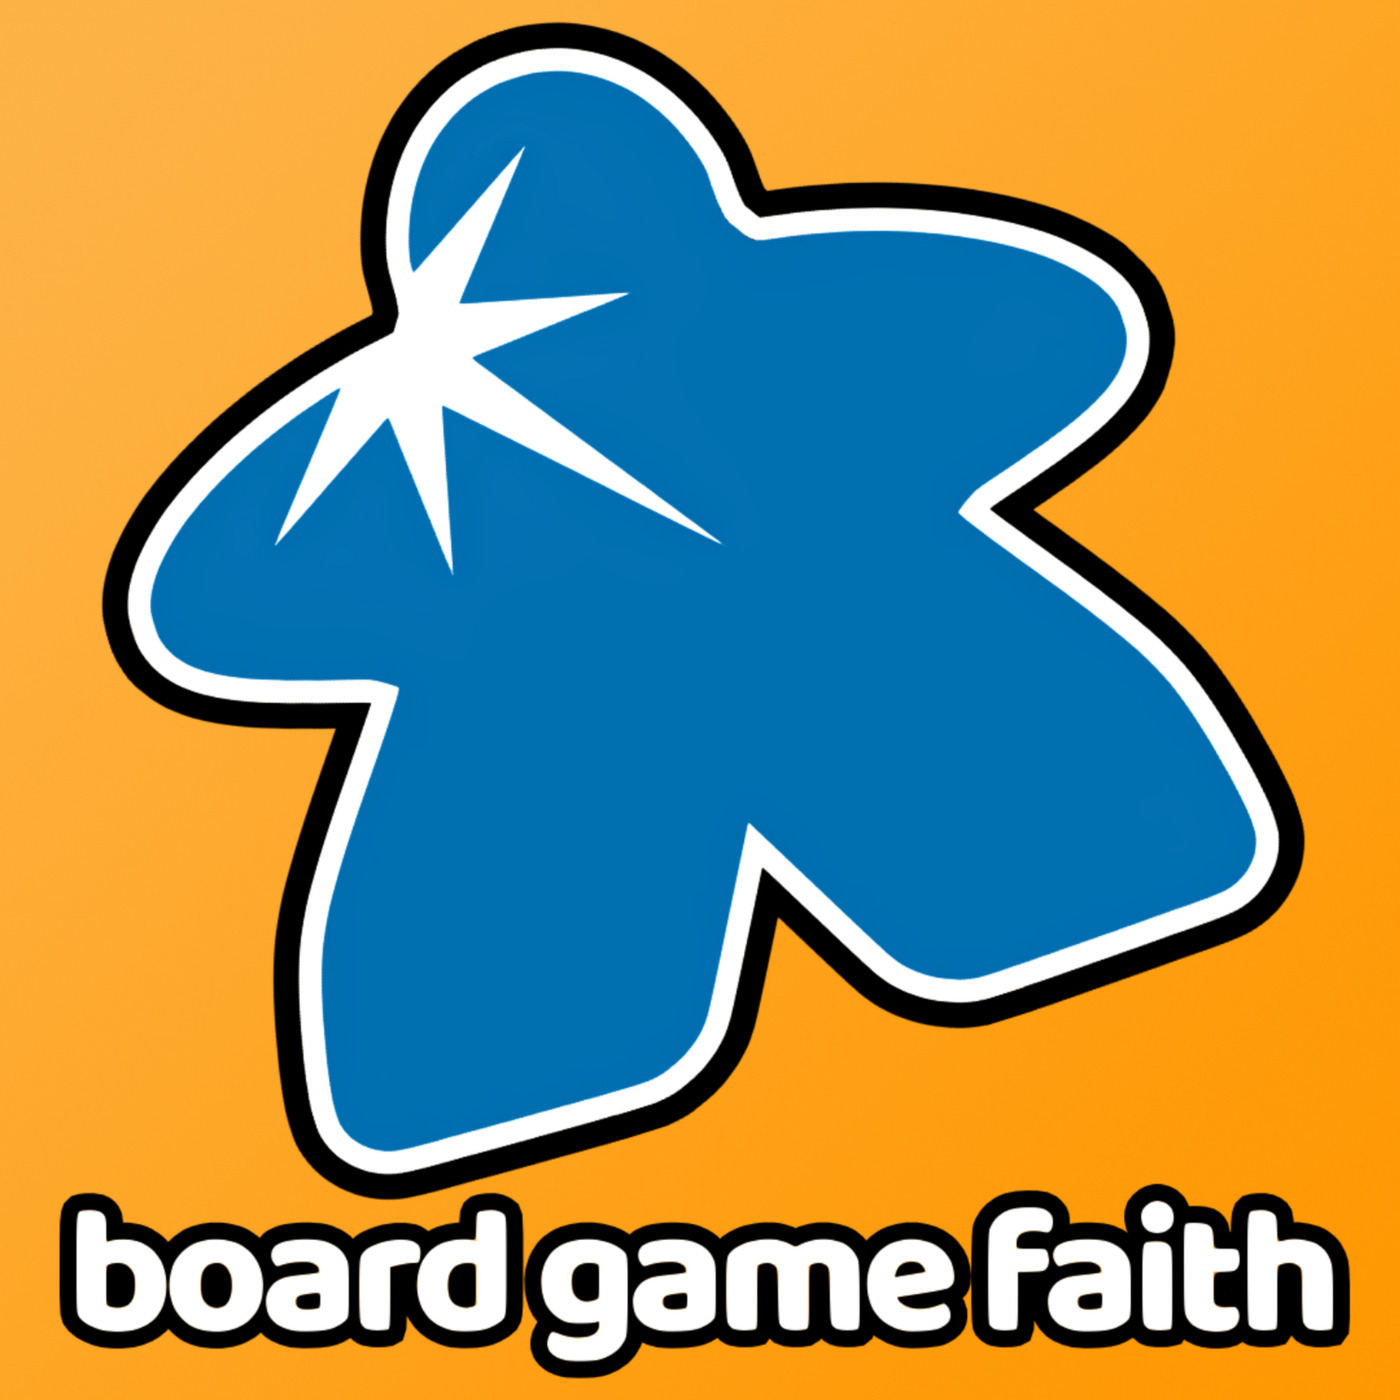 boardgamefaith